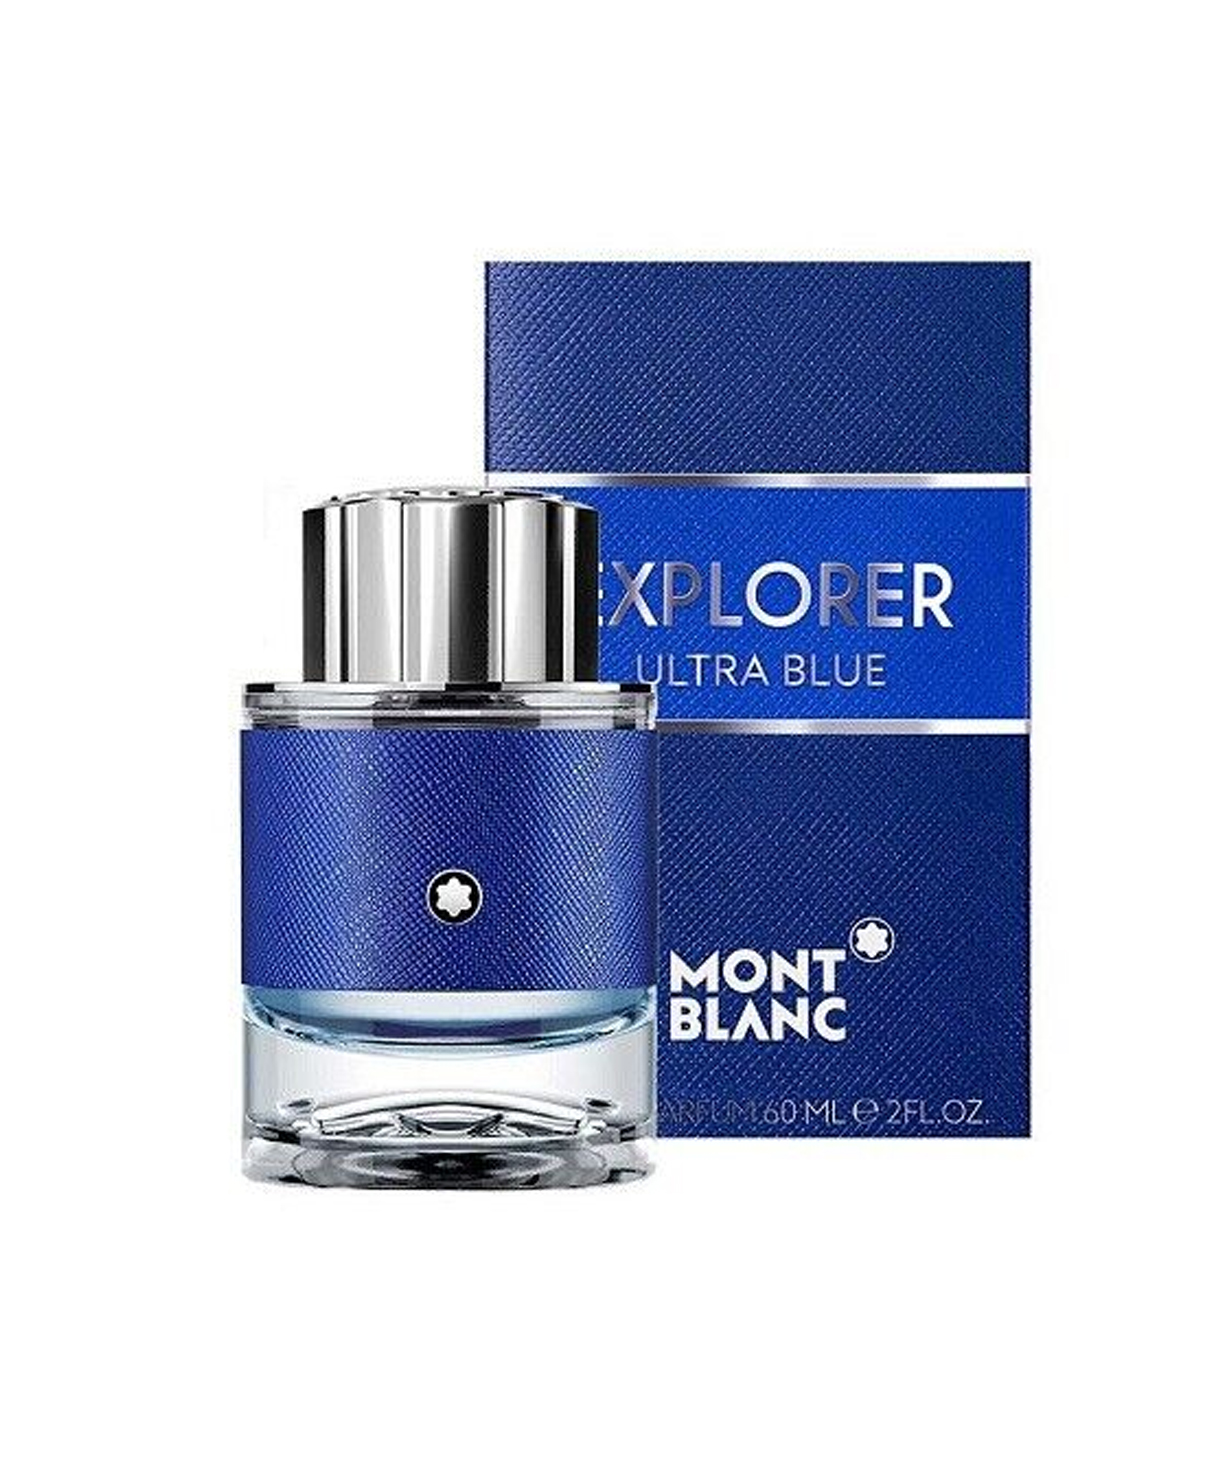 Perfume «Montblanc» Explorer Ultra Blue, for men, 60 ml